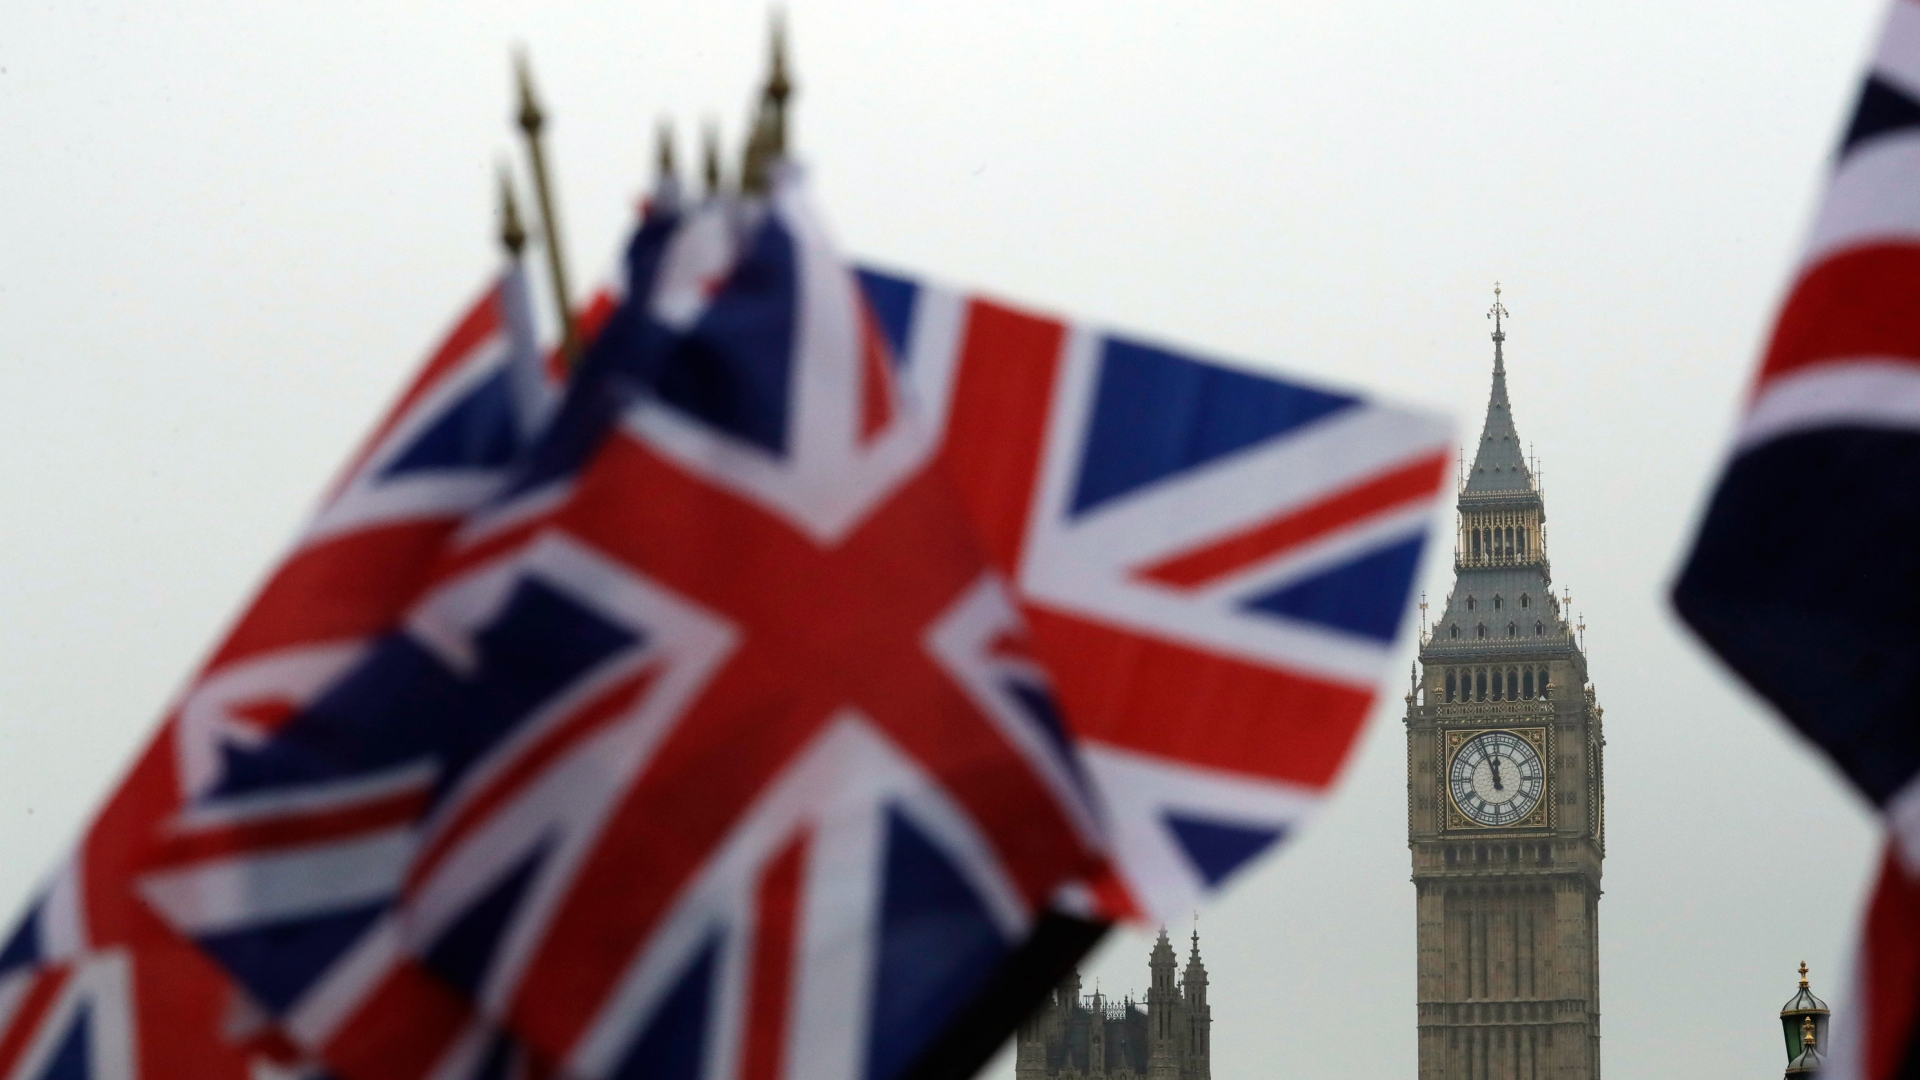 Britische Flaggen wehen in der Nähe des berühmten Uhrturms Big Ben. Der Uhrturm ist Teil des Palace of Westminster, in dem das britische Parlament tagt. | dpa